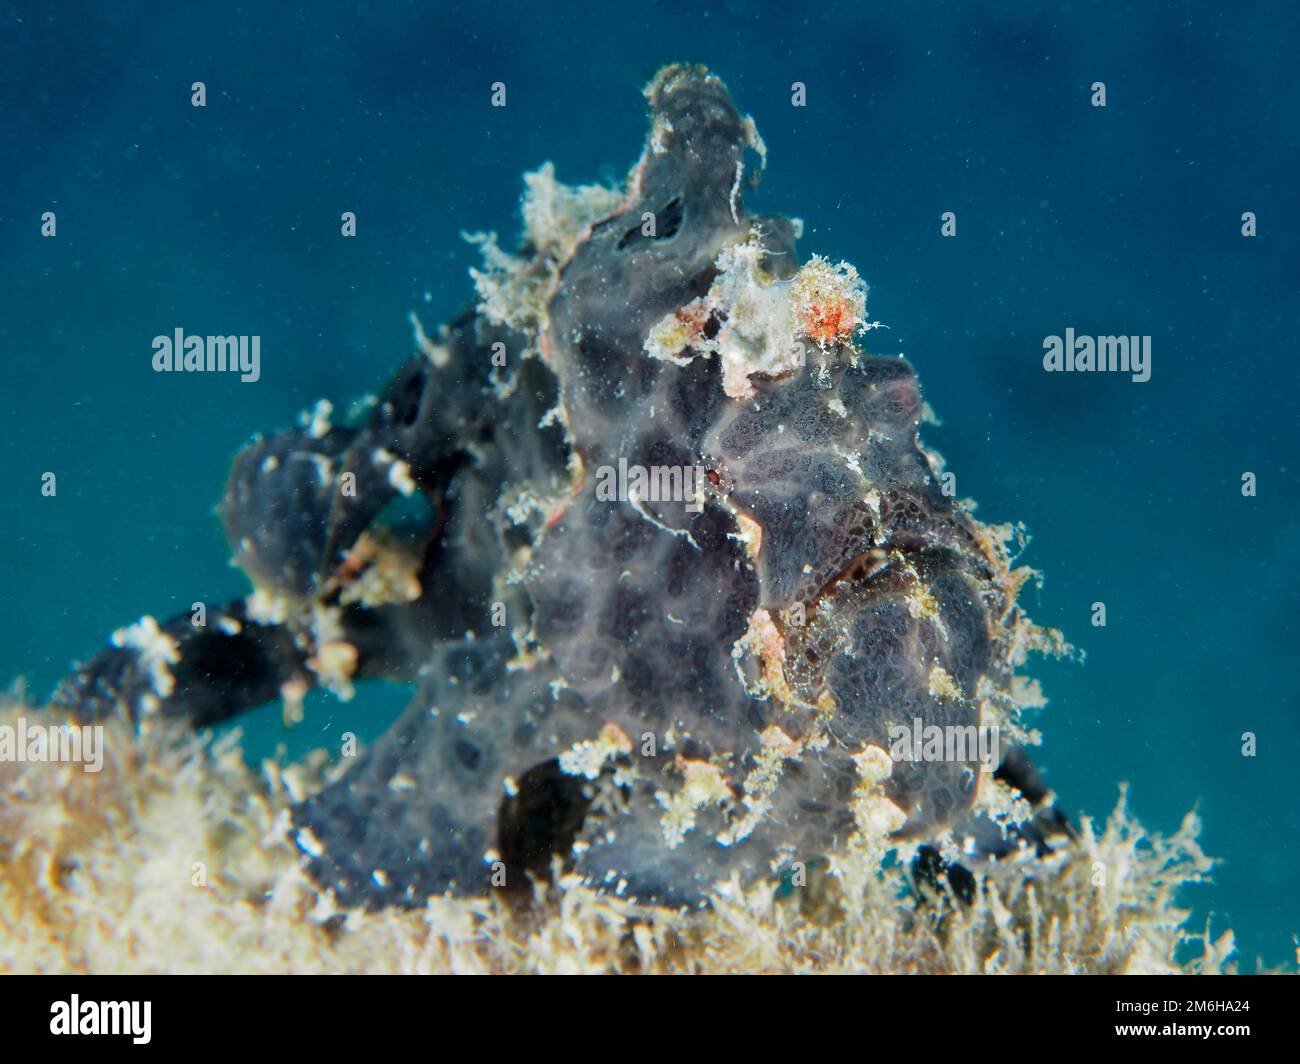 Grenouille géante (Antennarius commerson) . Site de plongée Maison Reef mangrove Bay, El Quesir, Egypte, Mer Rouge Banque D'Images